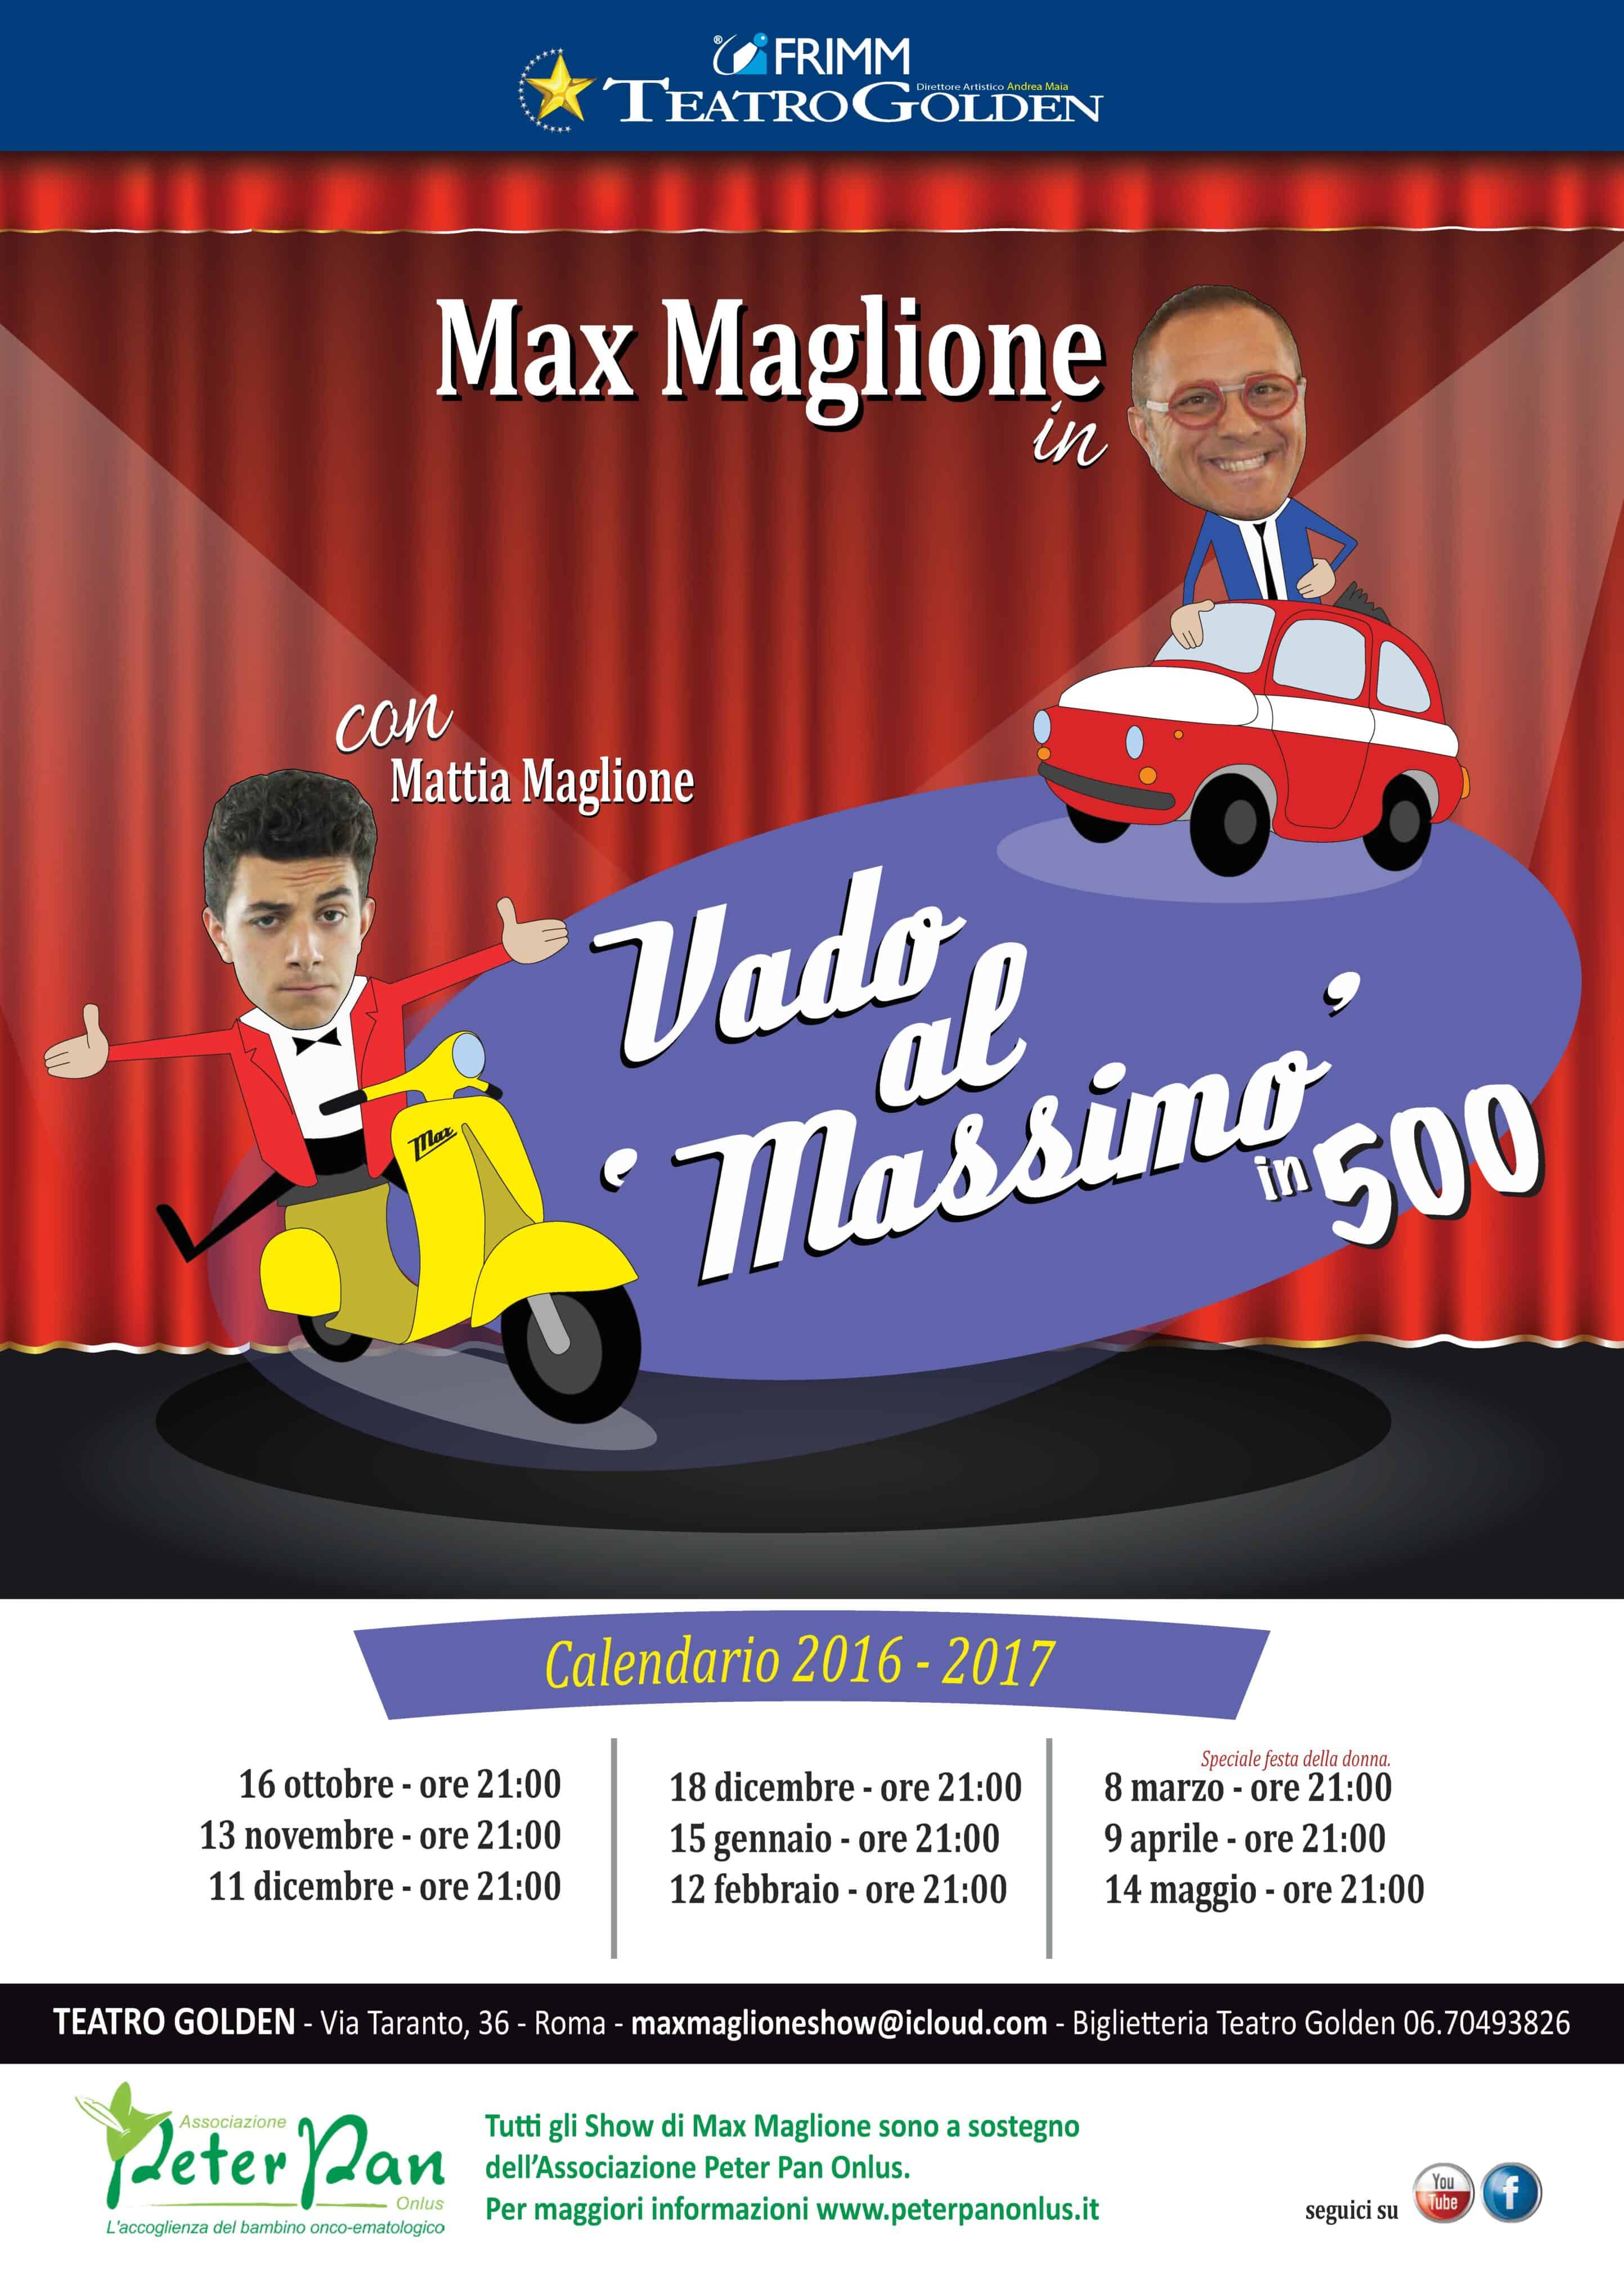 Max Maglione 2016-2017